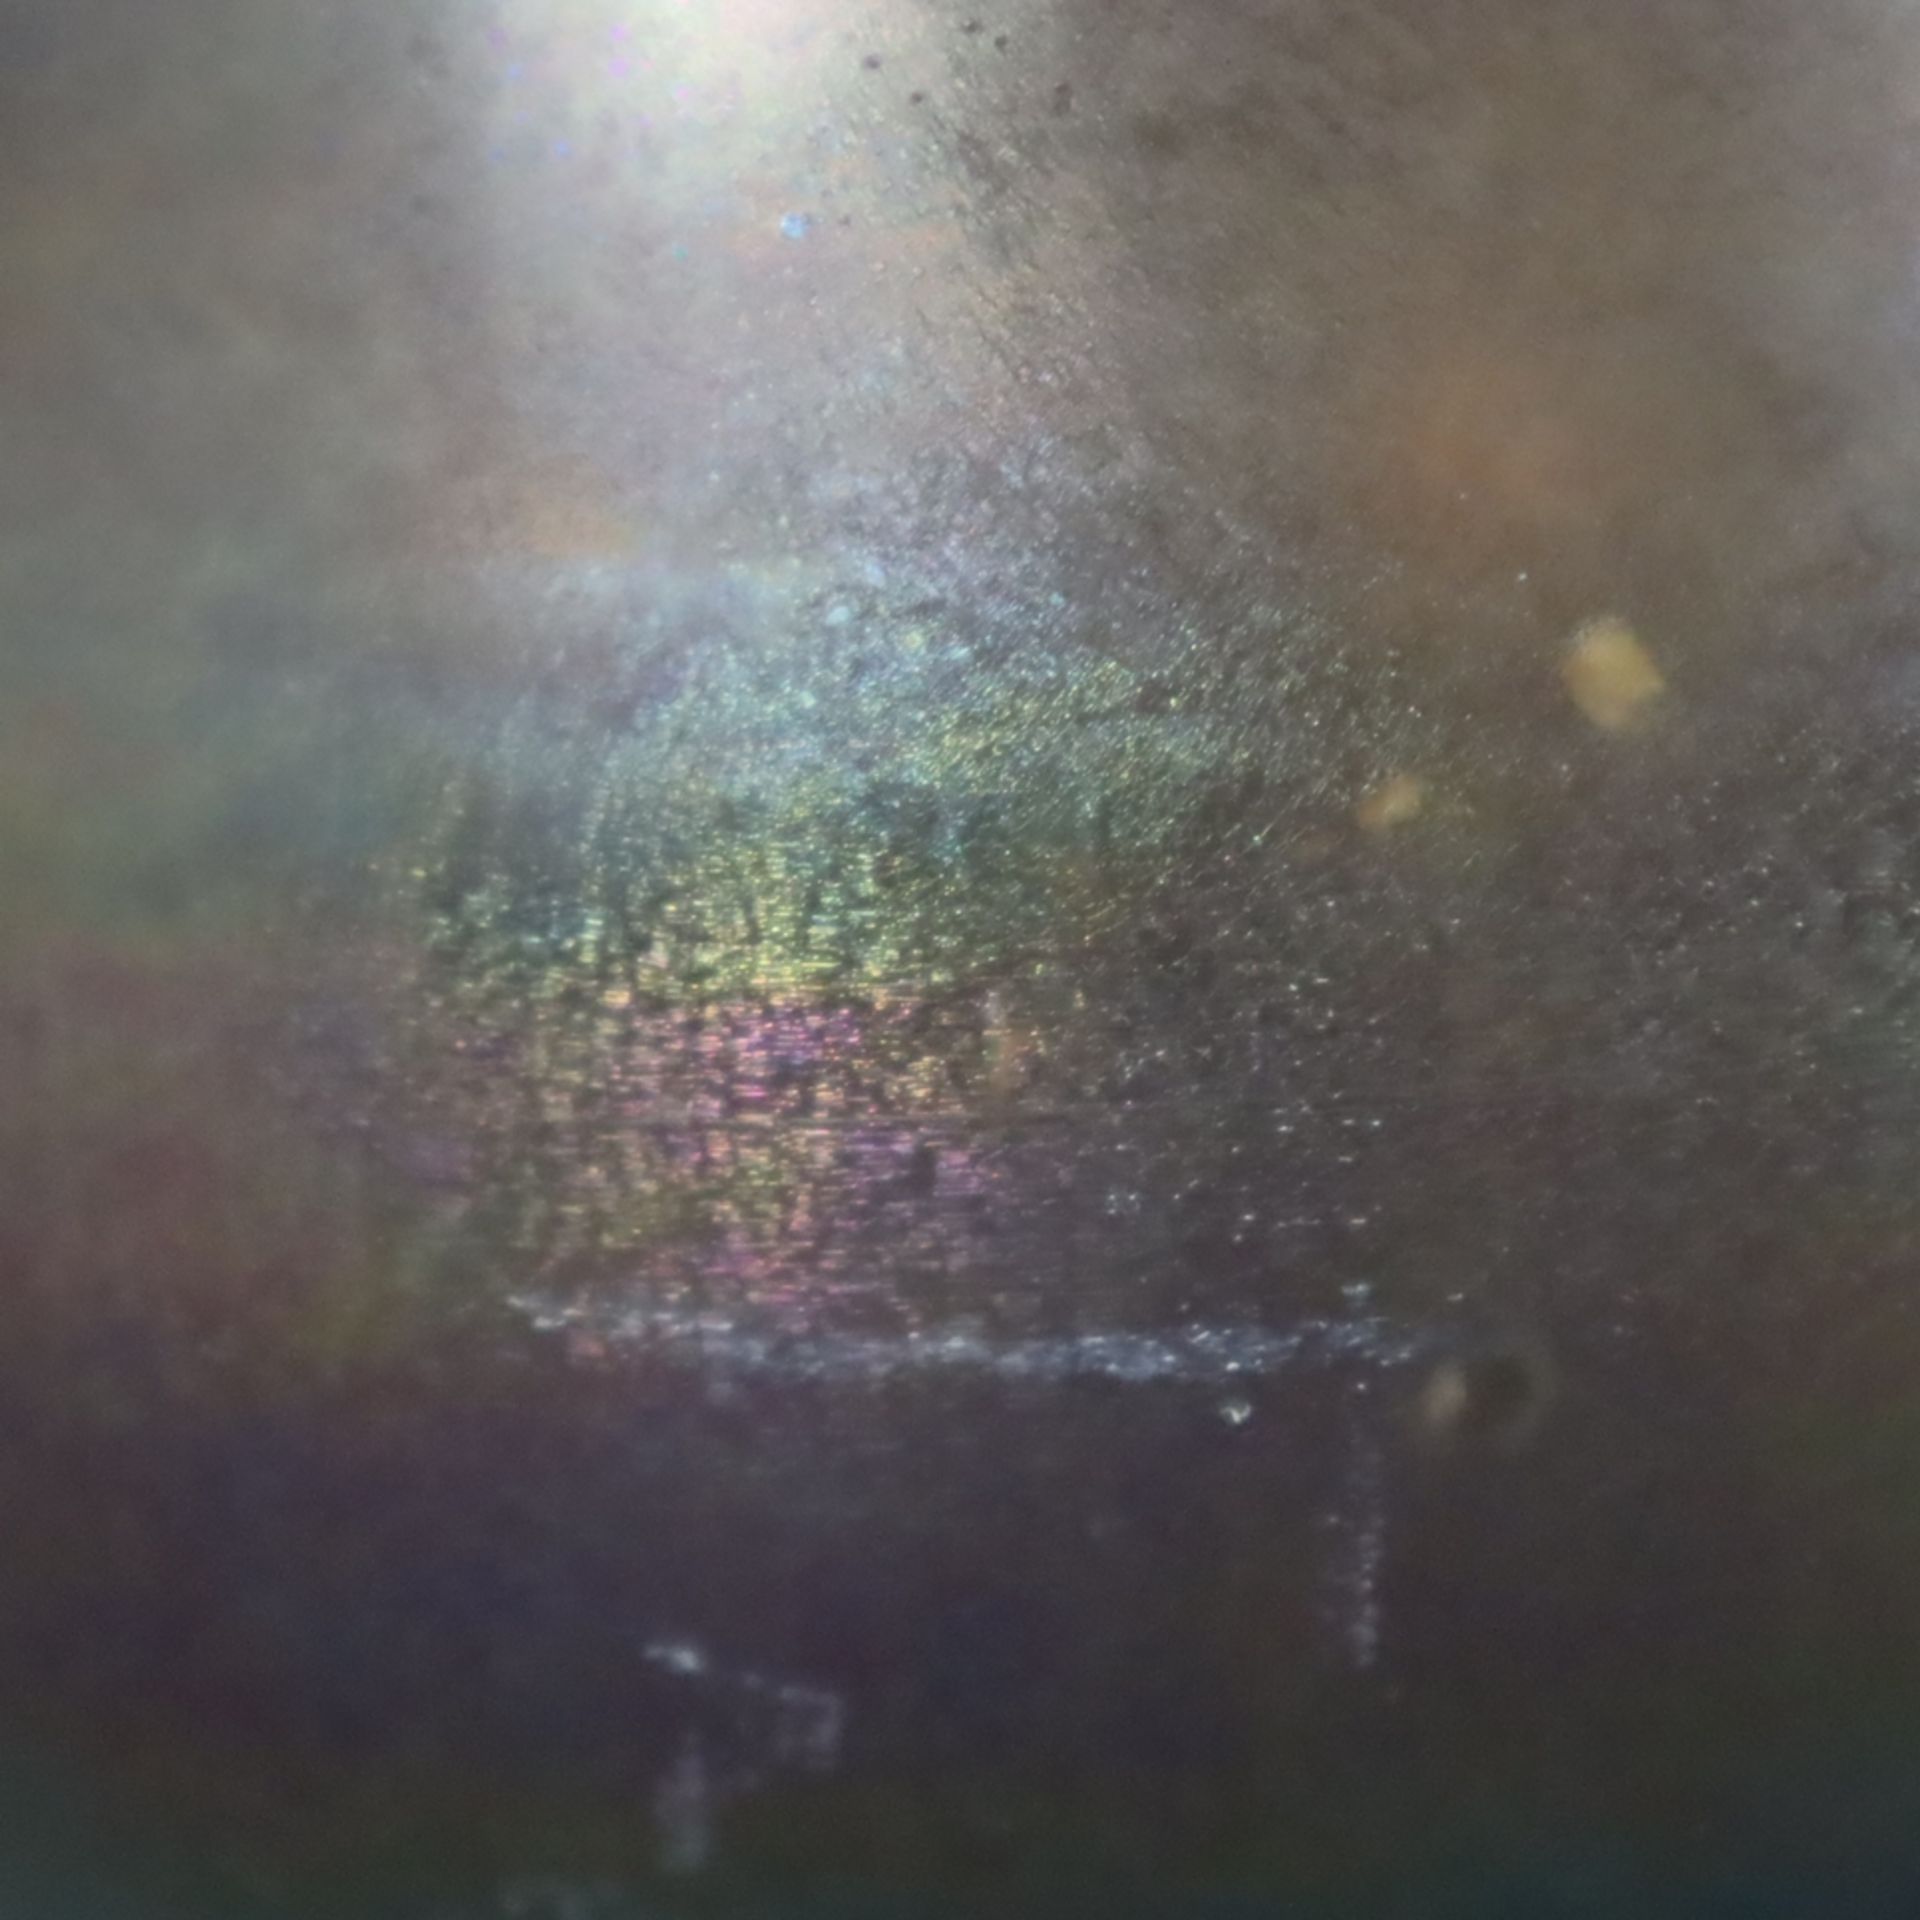 Jugendstil-Blumentopf - irisiertes Glas, bauchige Form, ausgeschliffener Bodenabriss, Gebrauchsspur - Bild 3 aus 7